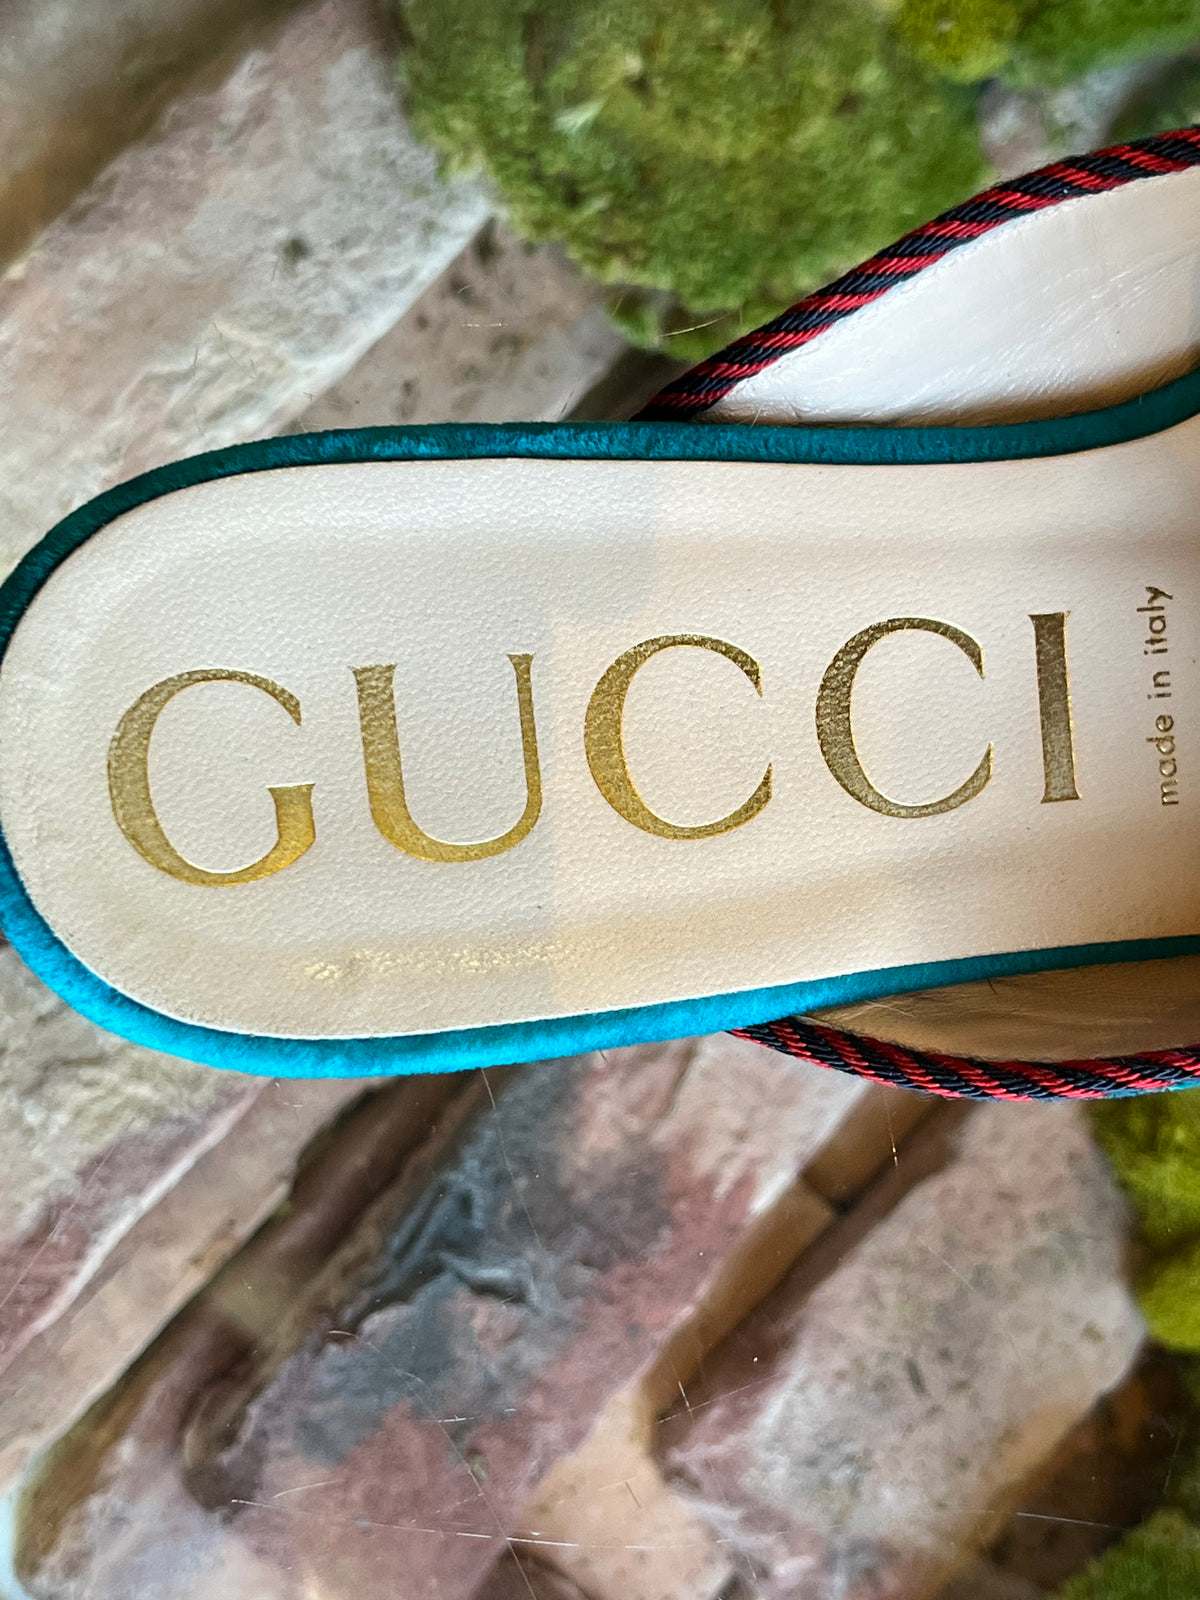 Gucci Velvet Sylvie Bow Flats SZ 40